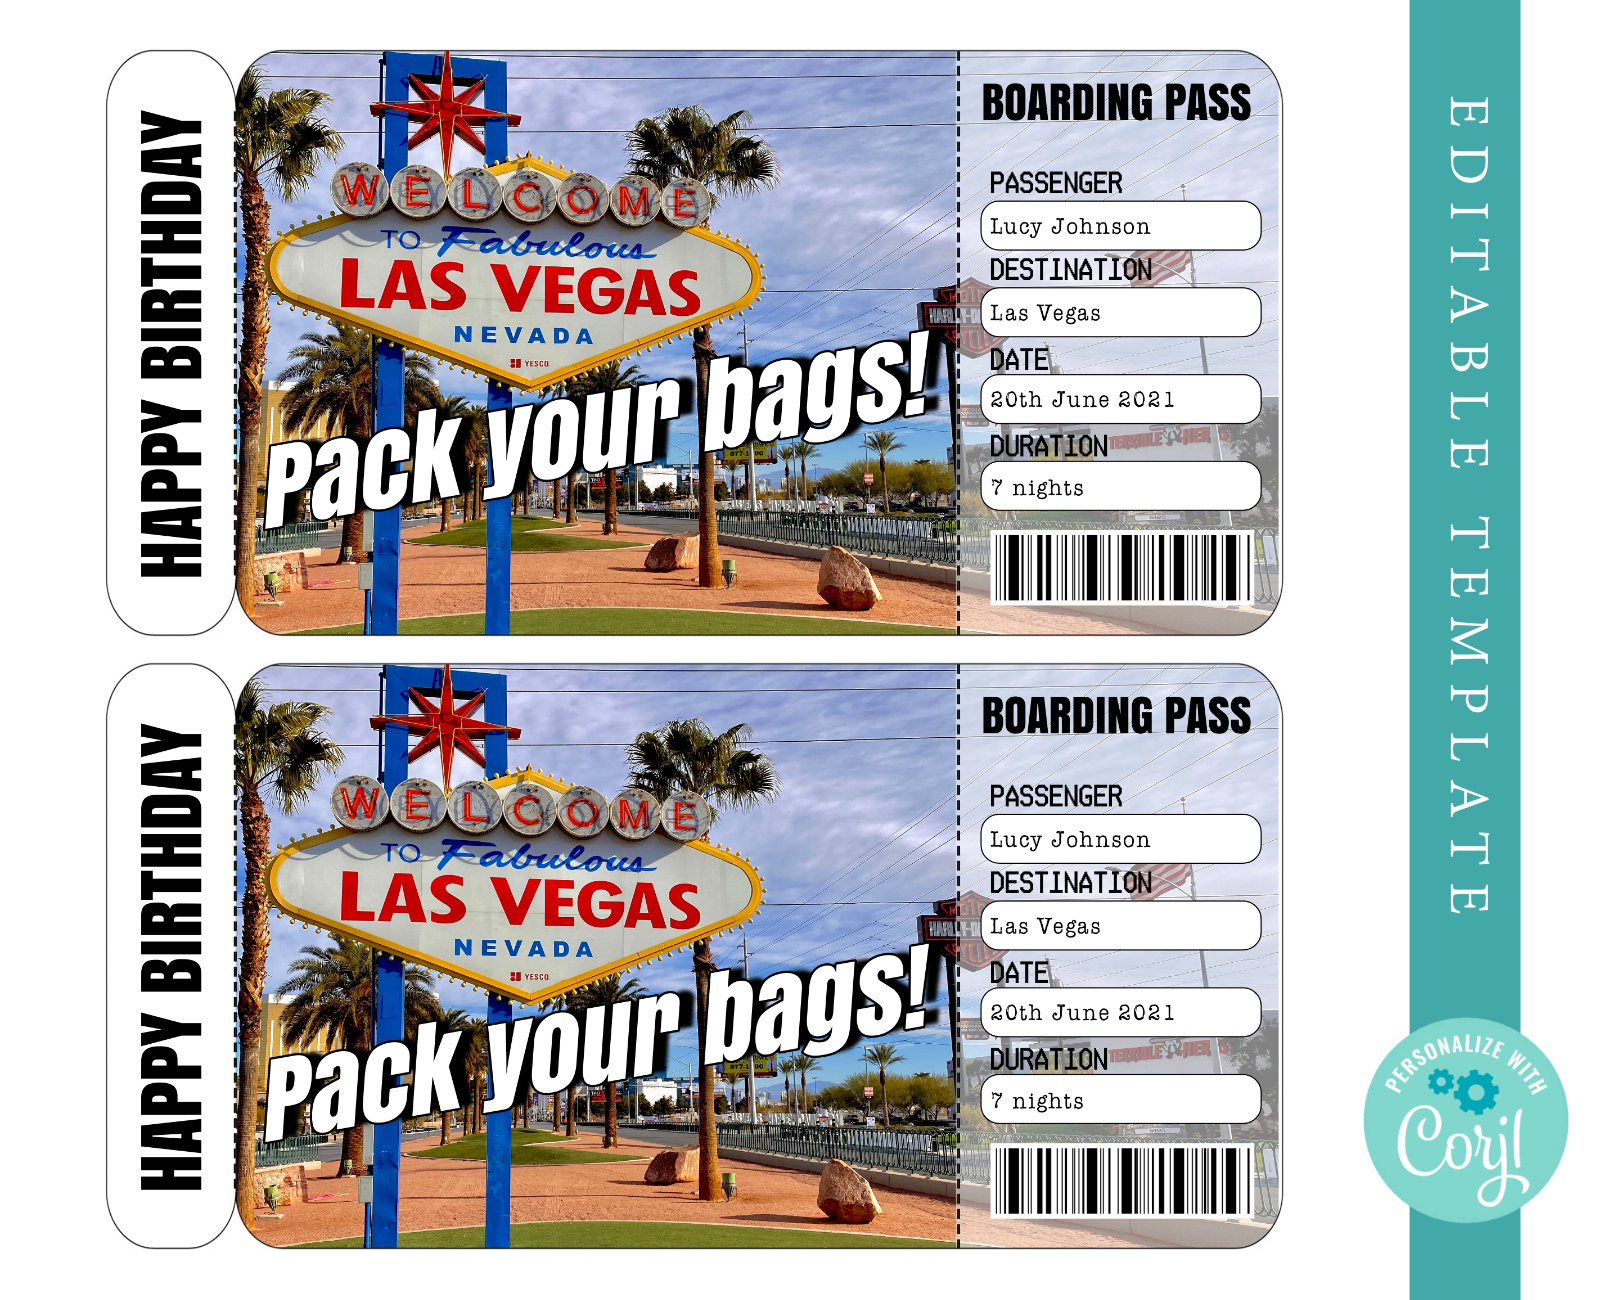 Las Vegas Boarding Pass Template Trip to Las Vegas Airplane Ticket  Printable Editable Boarding Pass Birthday Surprise Christmas Custom - Etsy